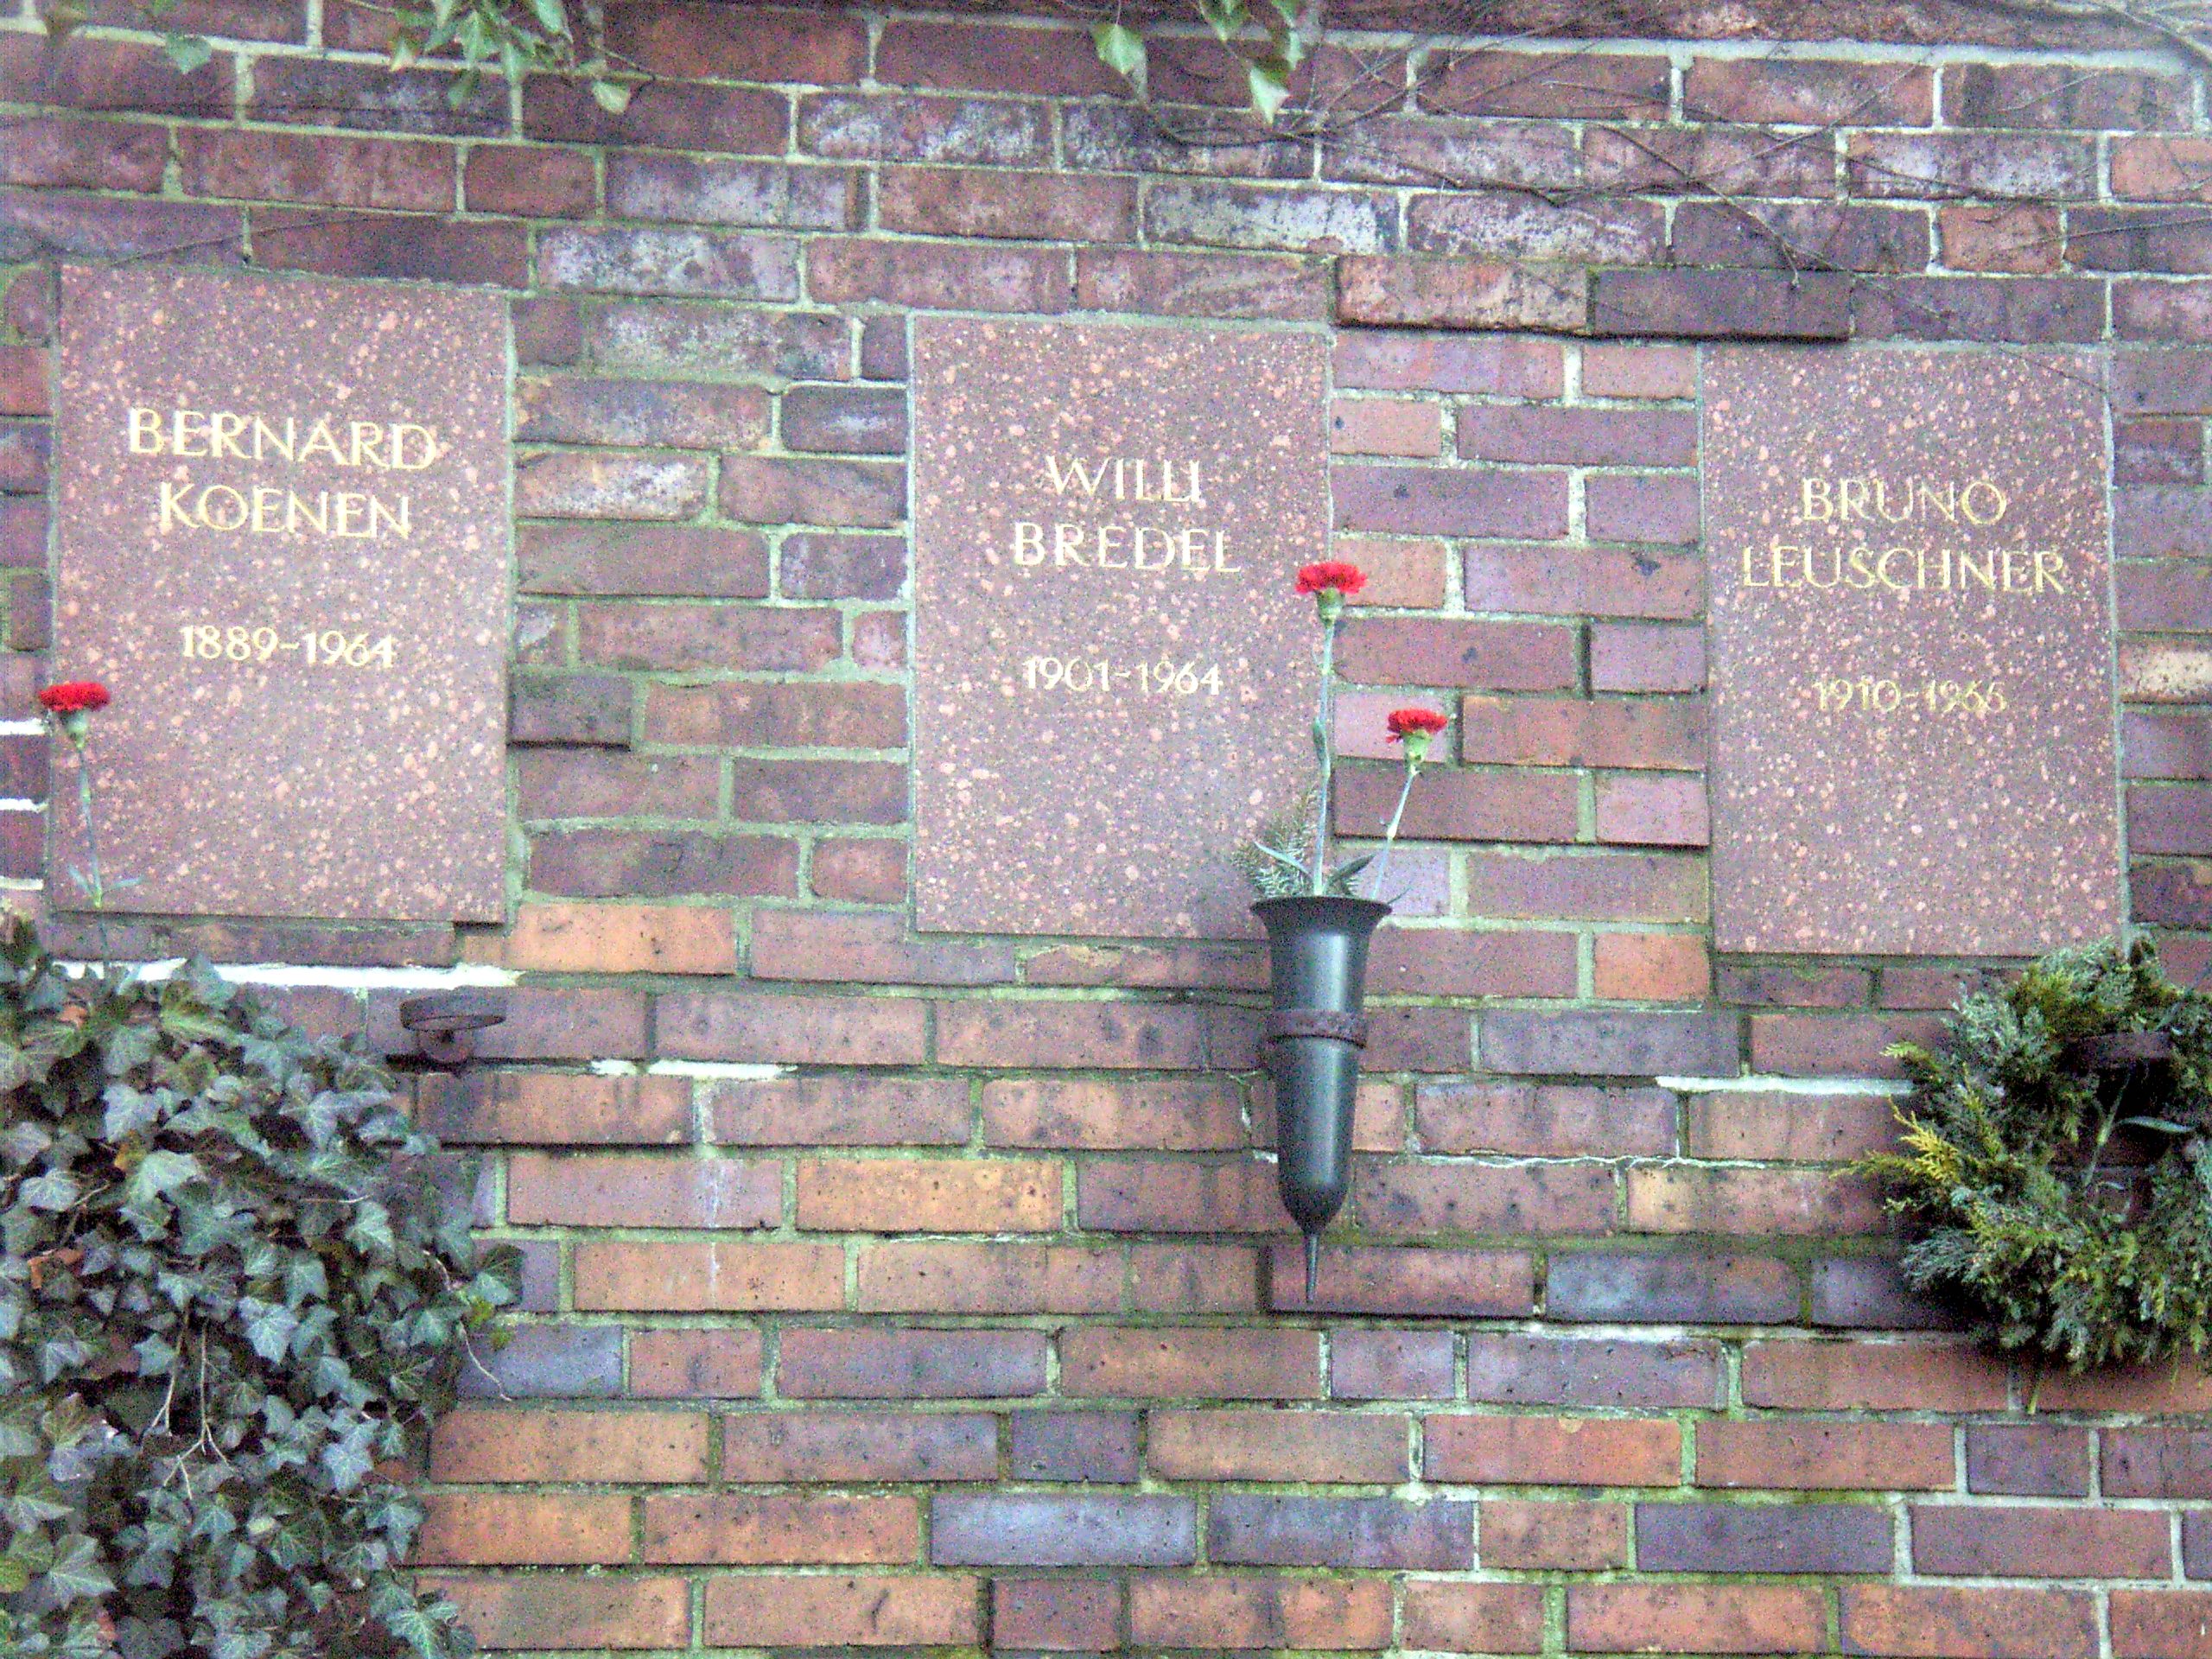 Gedenktafel für Willi Bredel am Denkmal des Sozialisten auf dem Zentralfriedhof Friedrichsfelde in Berlin-Lichtenberg. Foto Rene Senenko